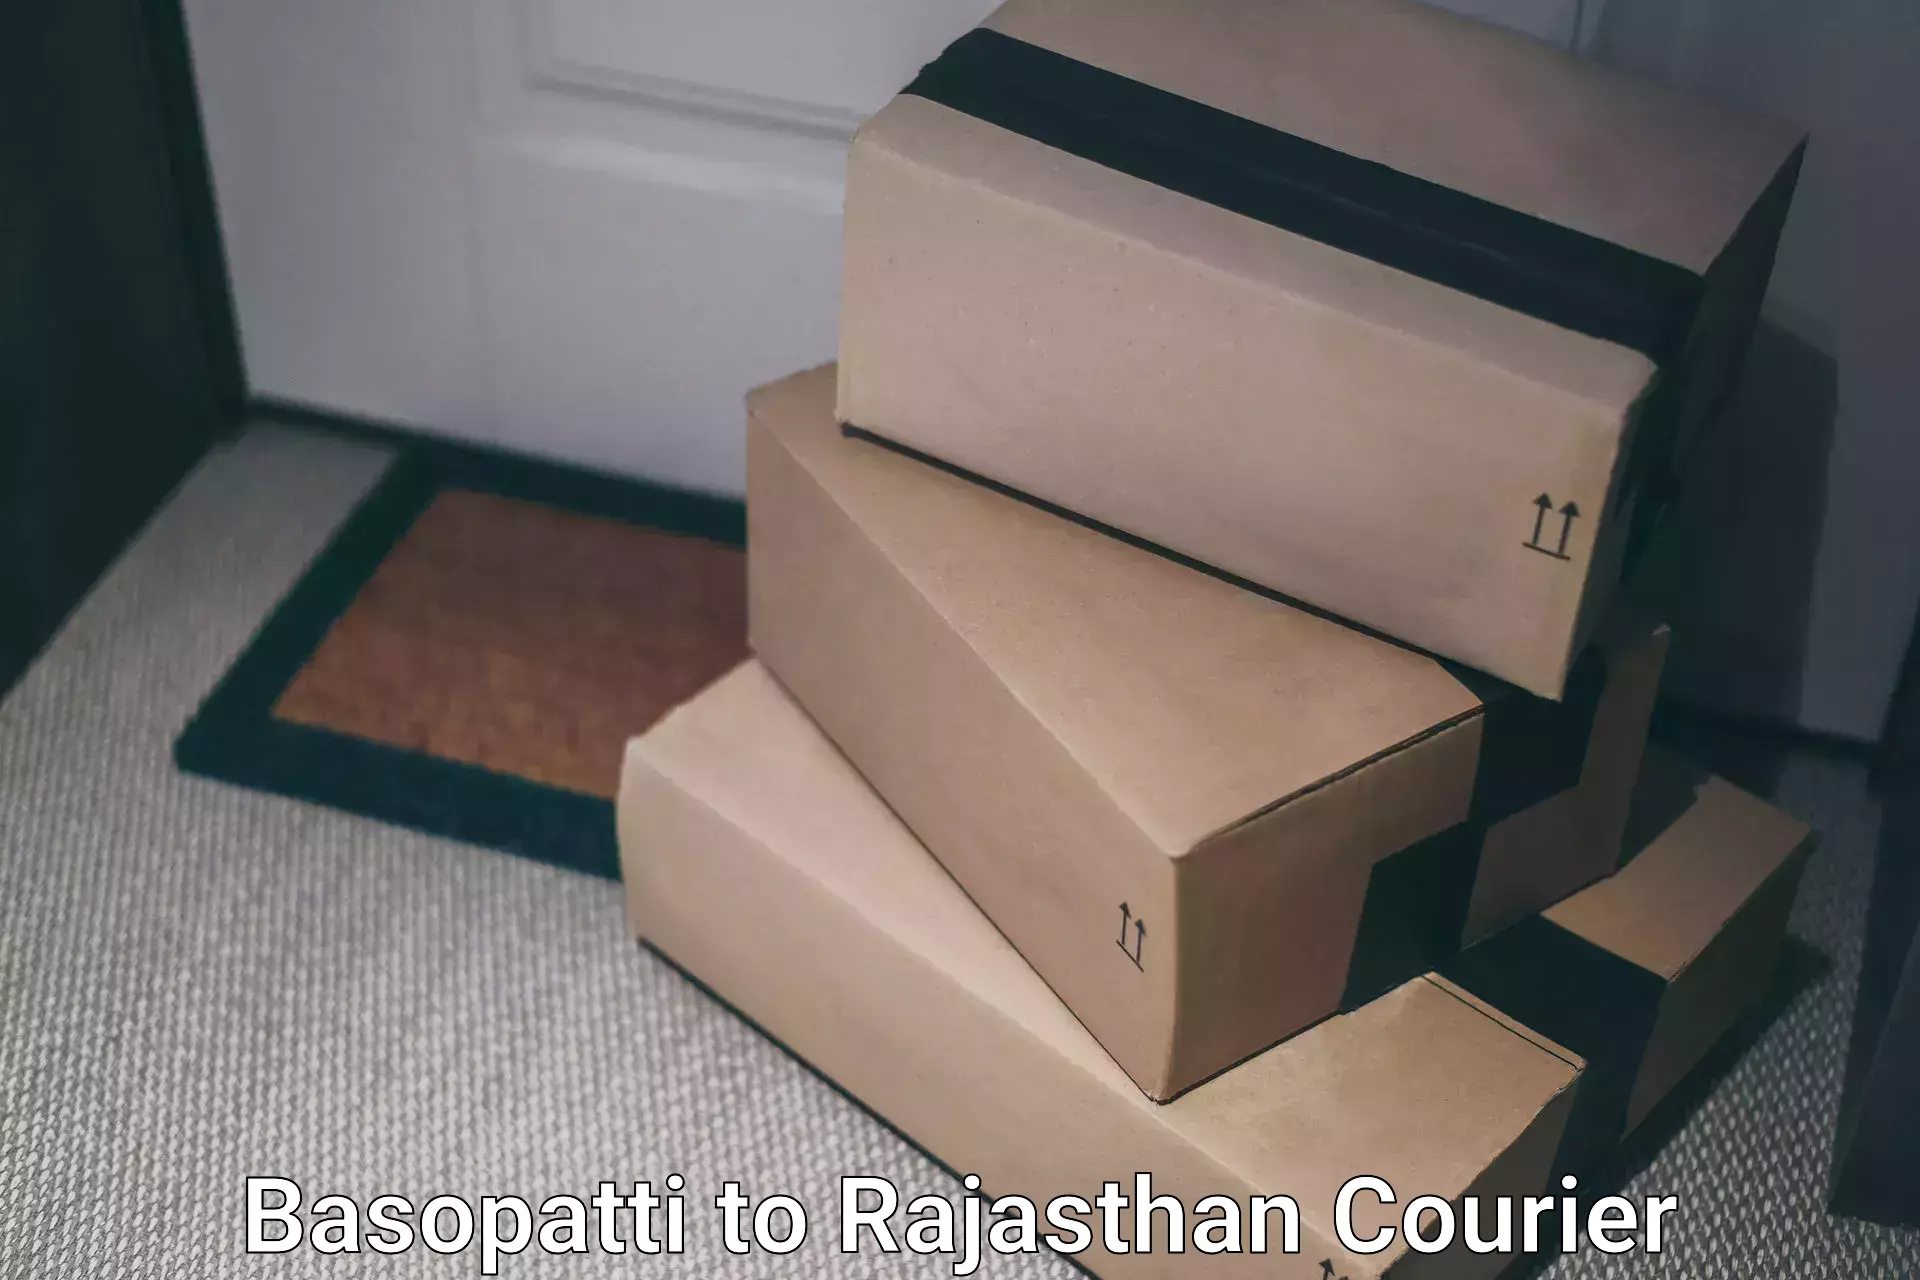 Round-the-clock parcel delivery in Basopatti to Bilara